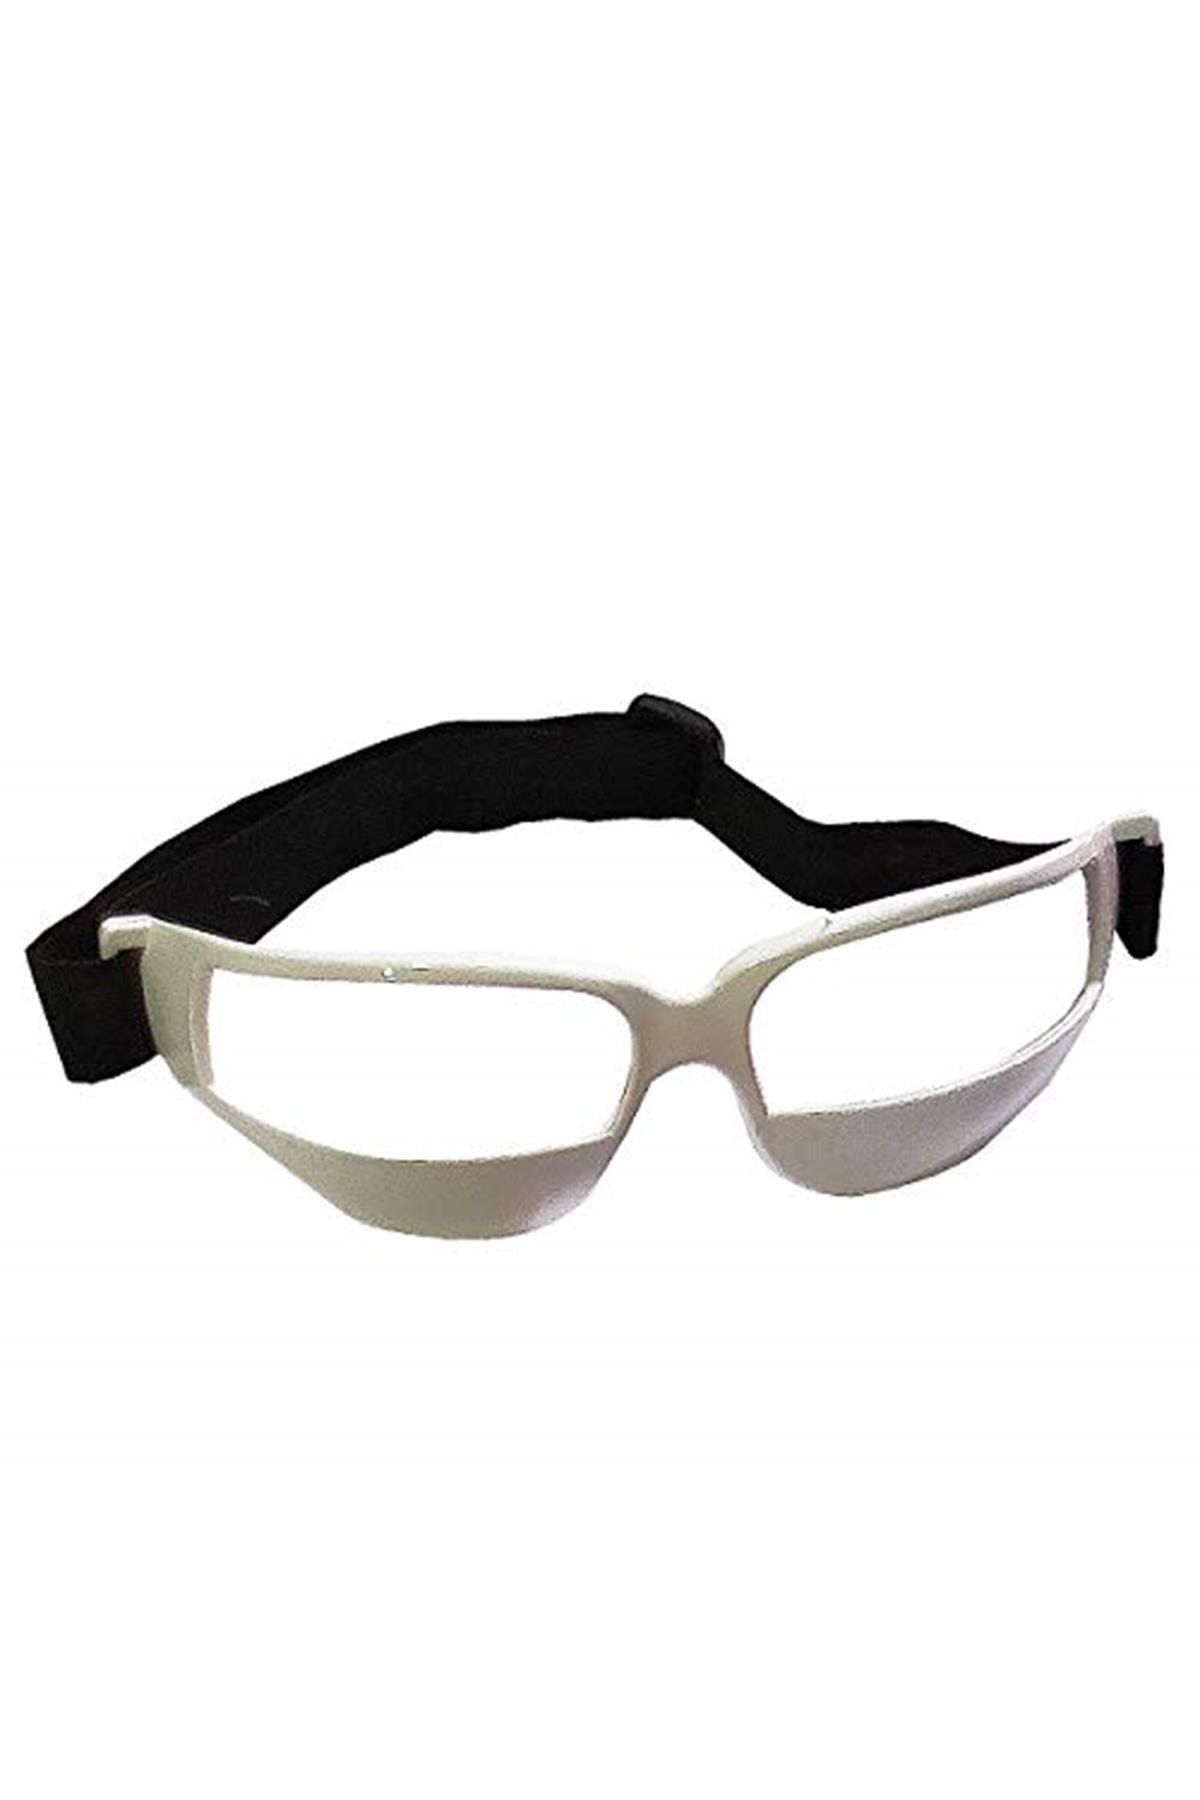 Avessa Marka: Basketbol Dripling Gözlüğü Beyaz Kategori: Antrenman Malzemeleri